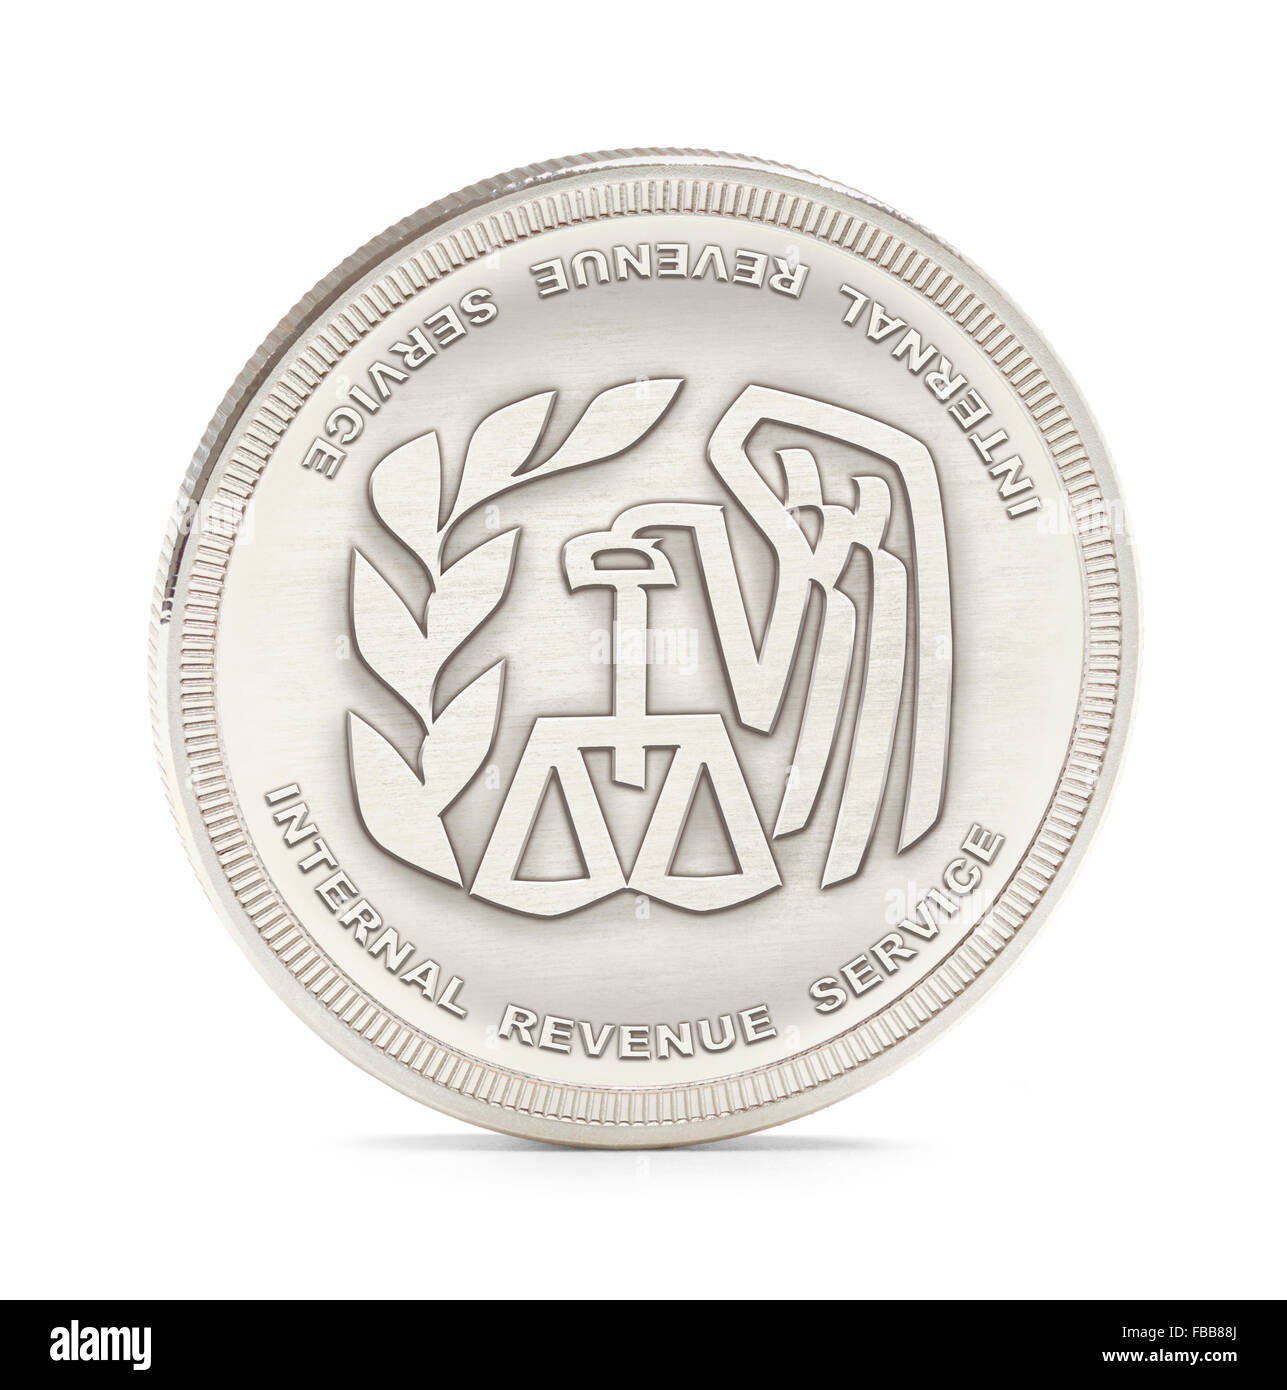 Internal Revenue Service moneta d'argento isolato su uno sfondo bianco. Foto Stock